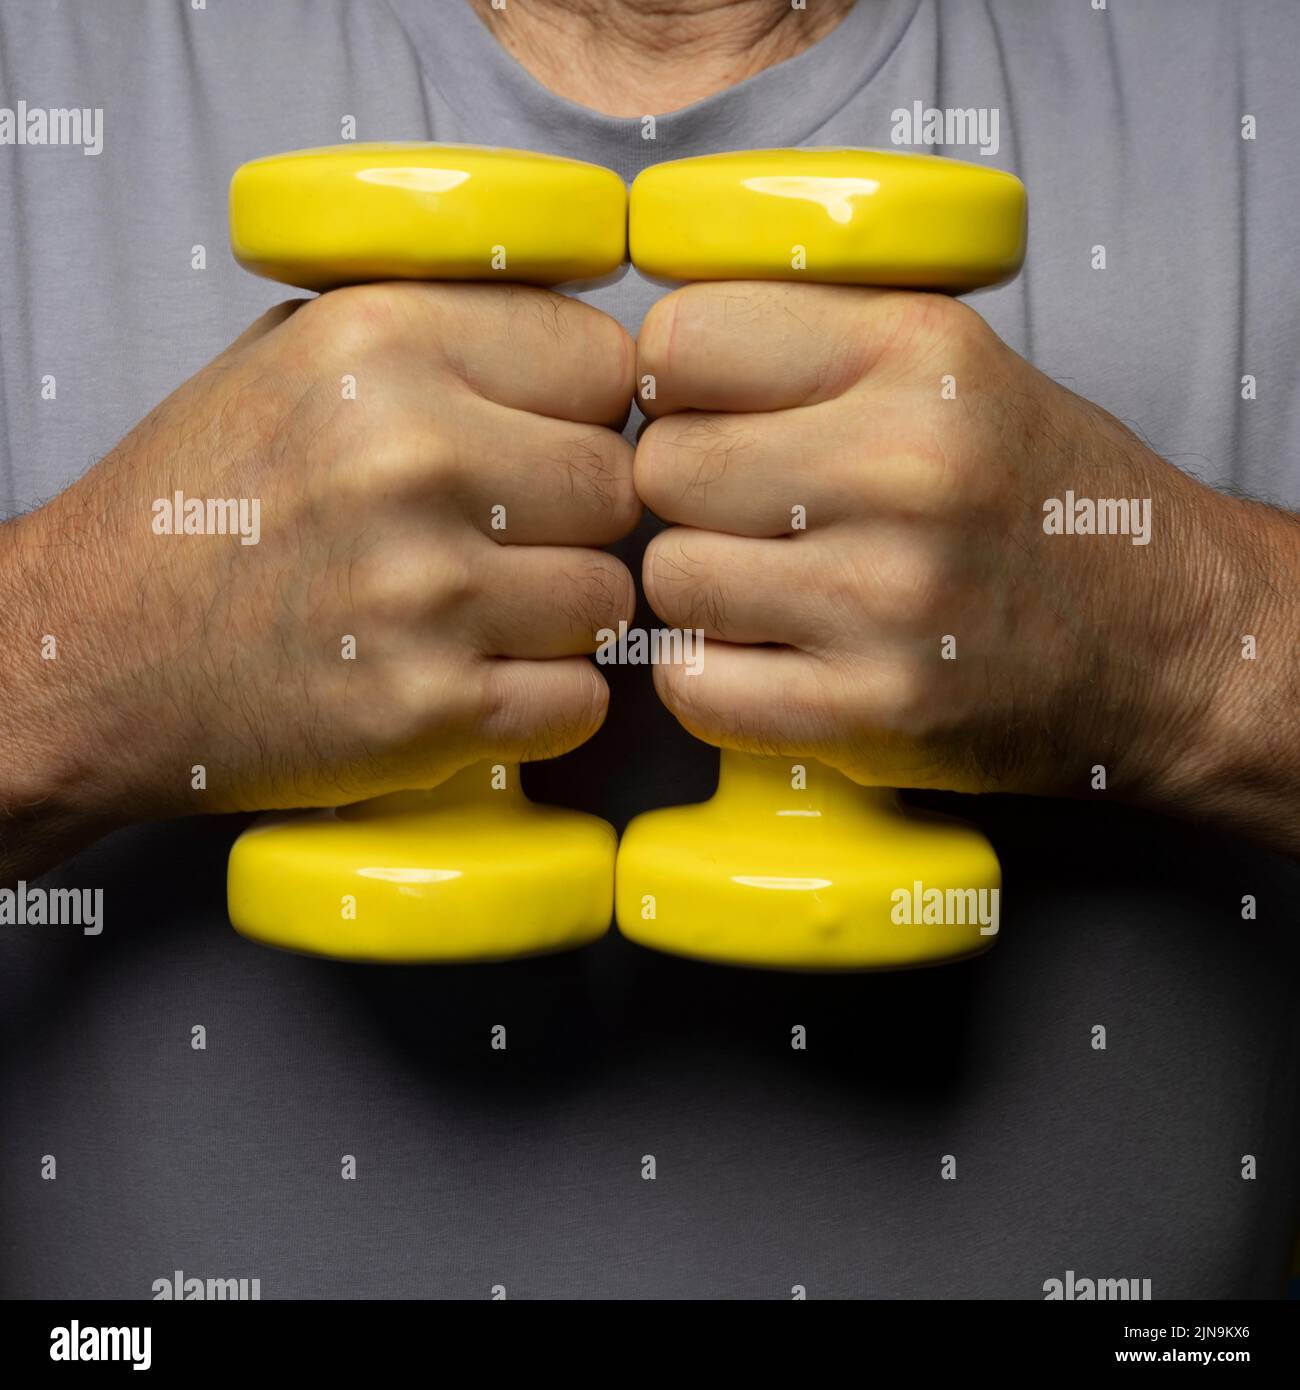 pesas gimnásticas amarillas en la mano Foto de stock